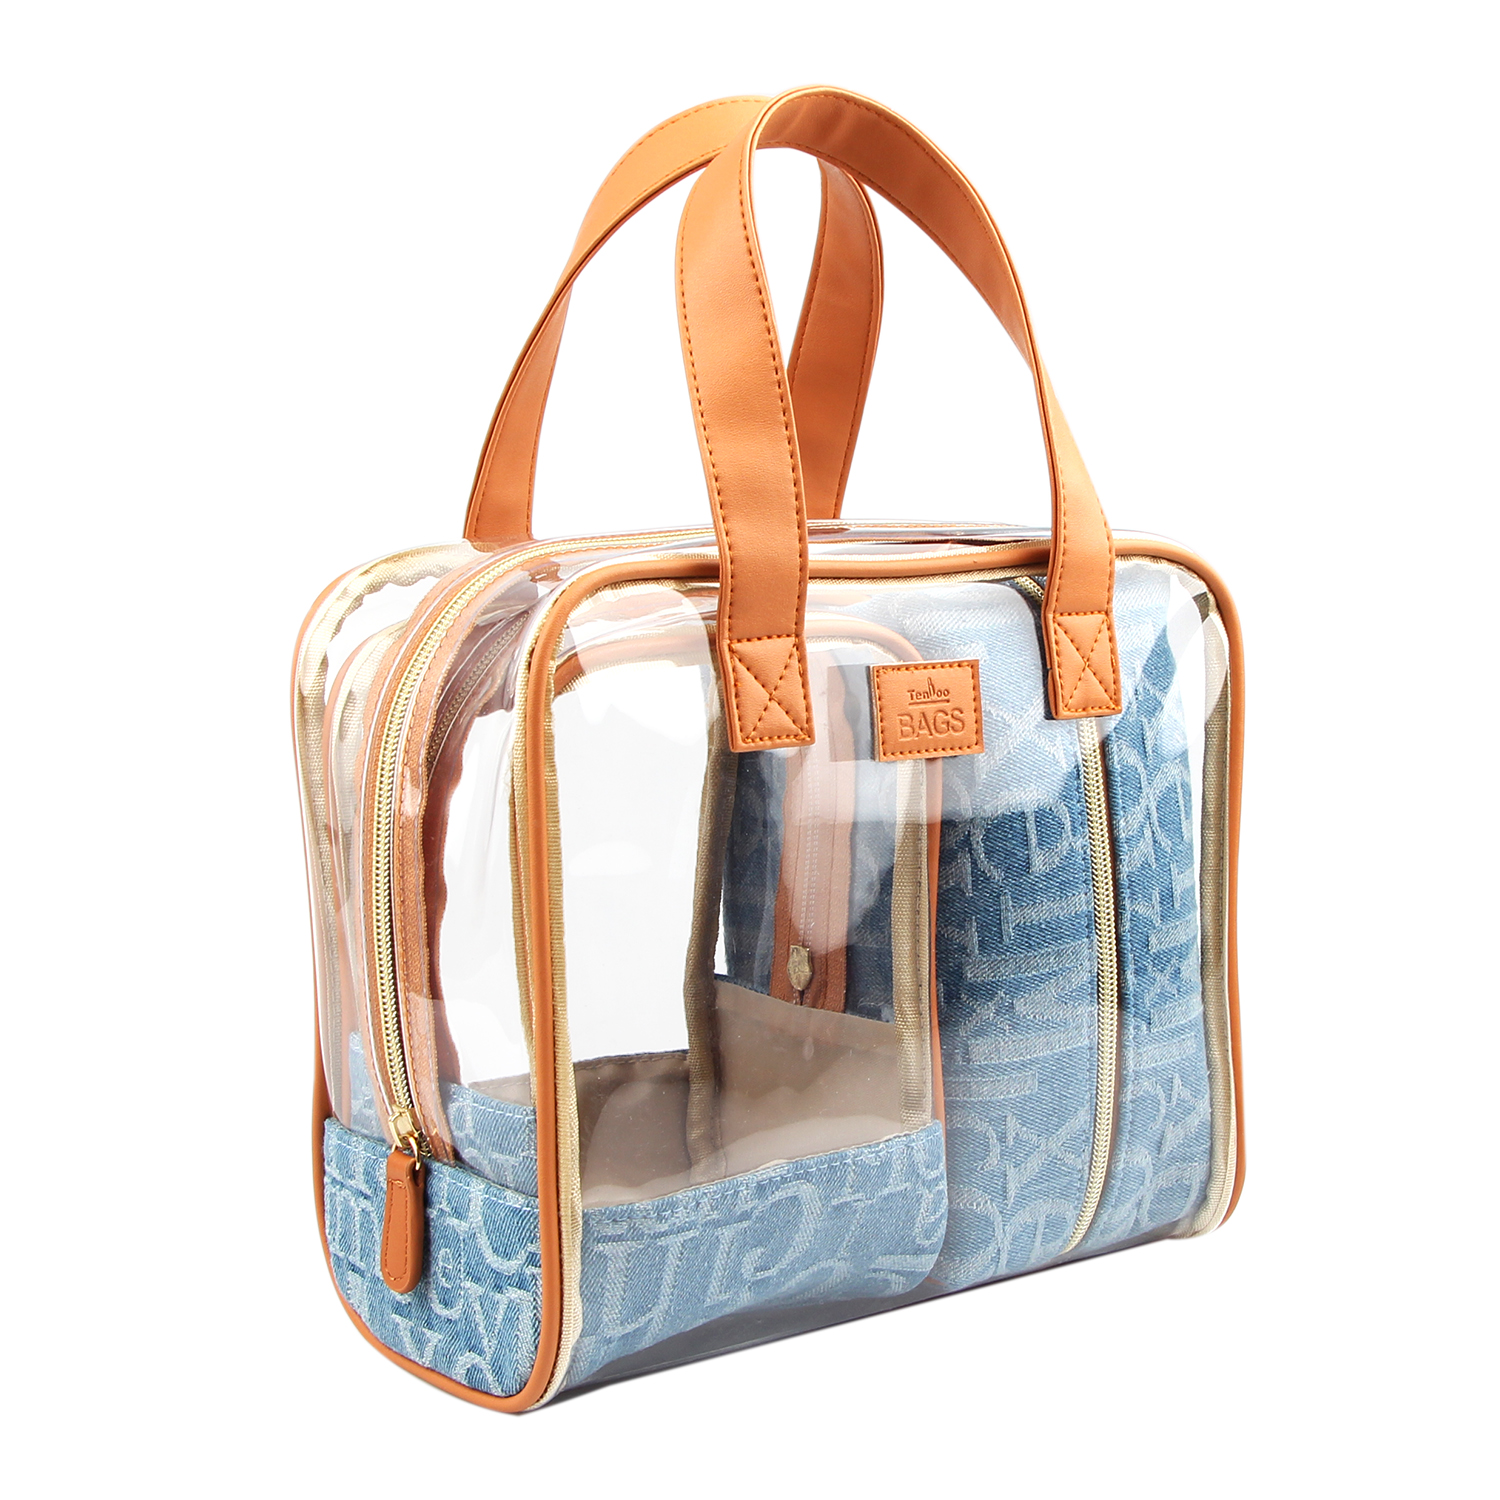 ກະເປົາໃສ່ເຄື່ອງສຳອາງສຳຫລັບຜູ້ຍິງເດີນທາງ ຊຸດກະເປົ໋າເຄື່ອງສຳອາງ Jeans 3-Piece Makeup Bag Set For Travel, Beauty Organization, Cotton Denim (3 Size: ໃຫຍ່,ກາງ,ນ້ອຍ)